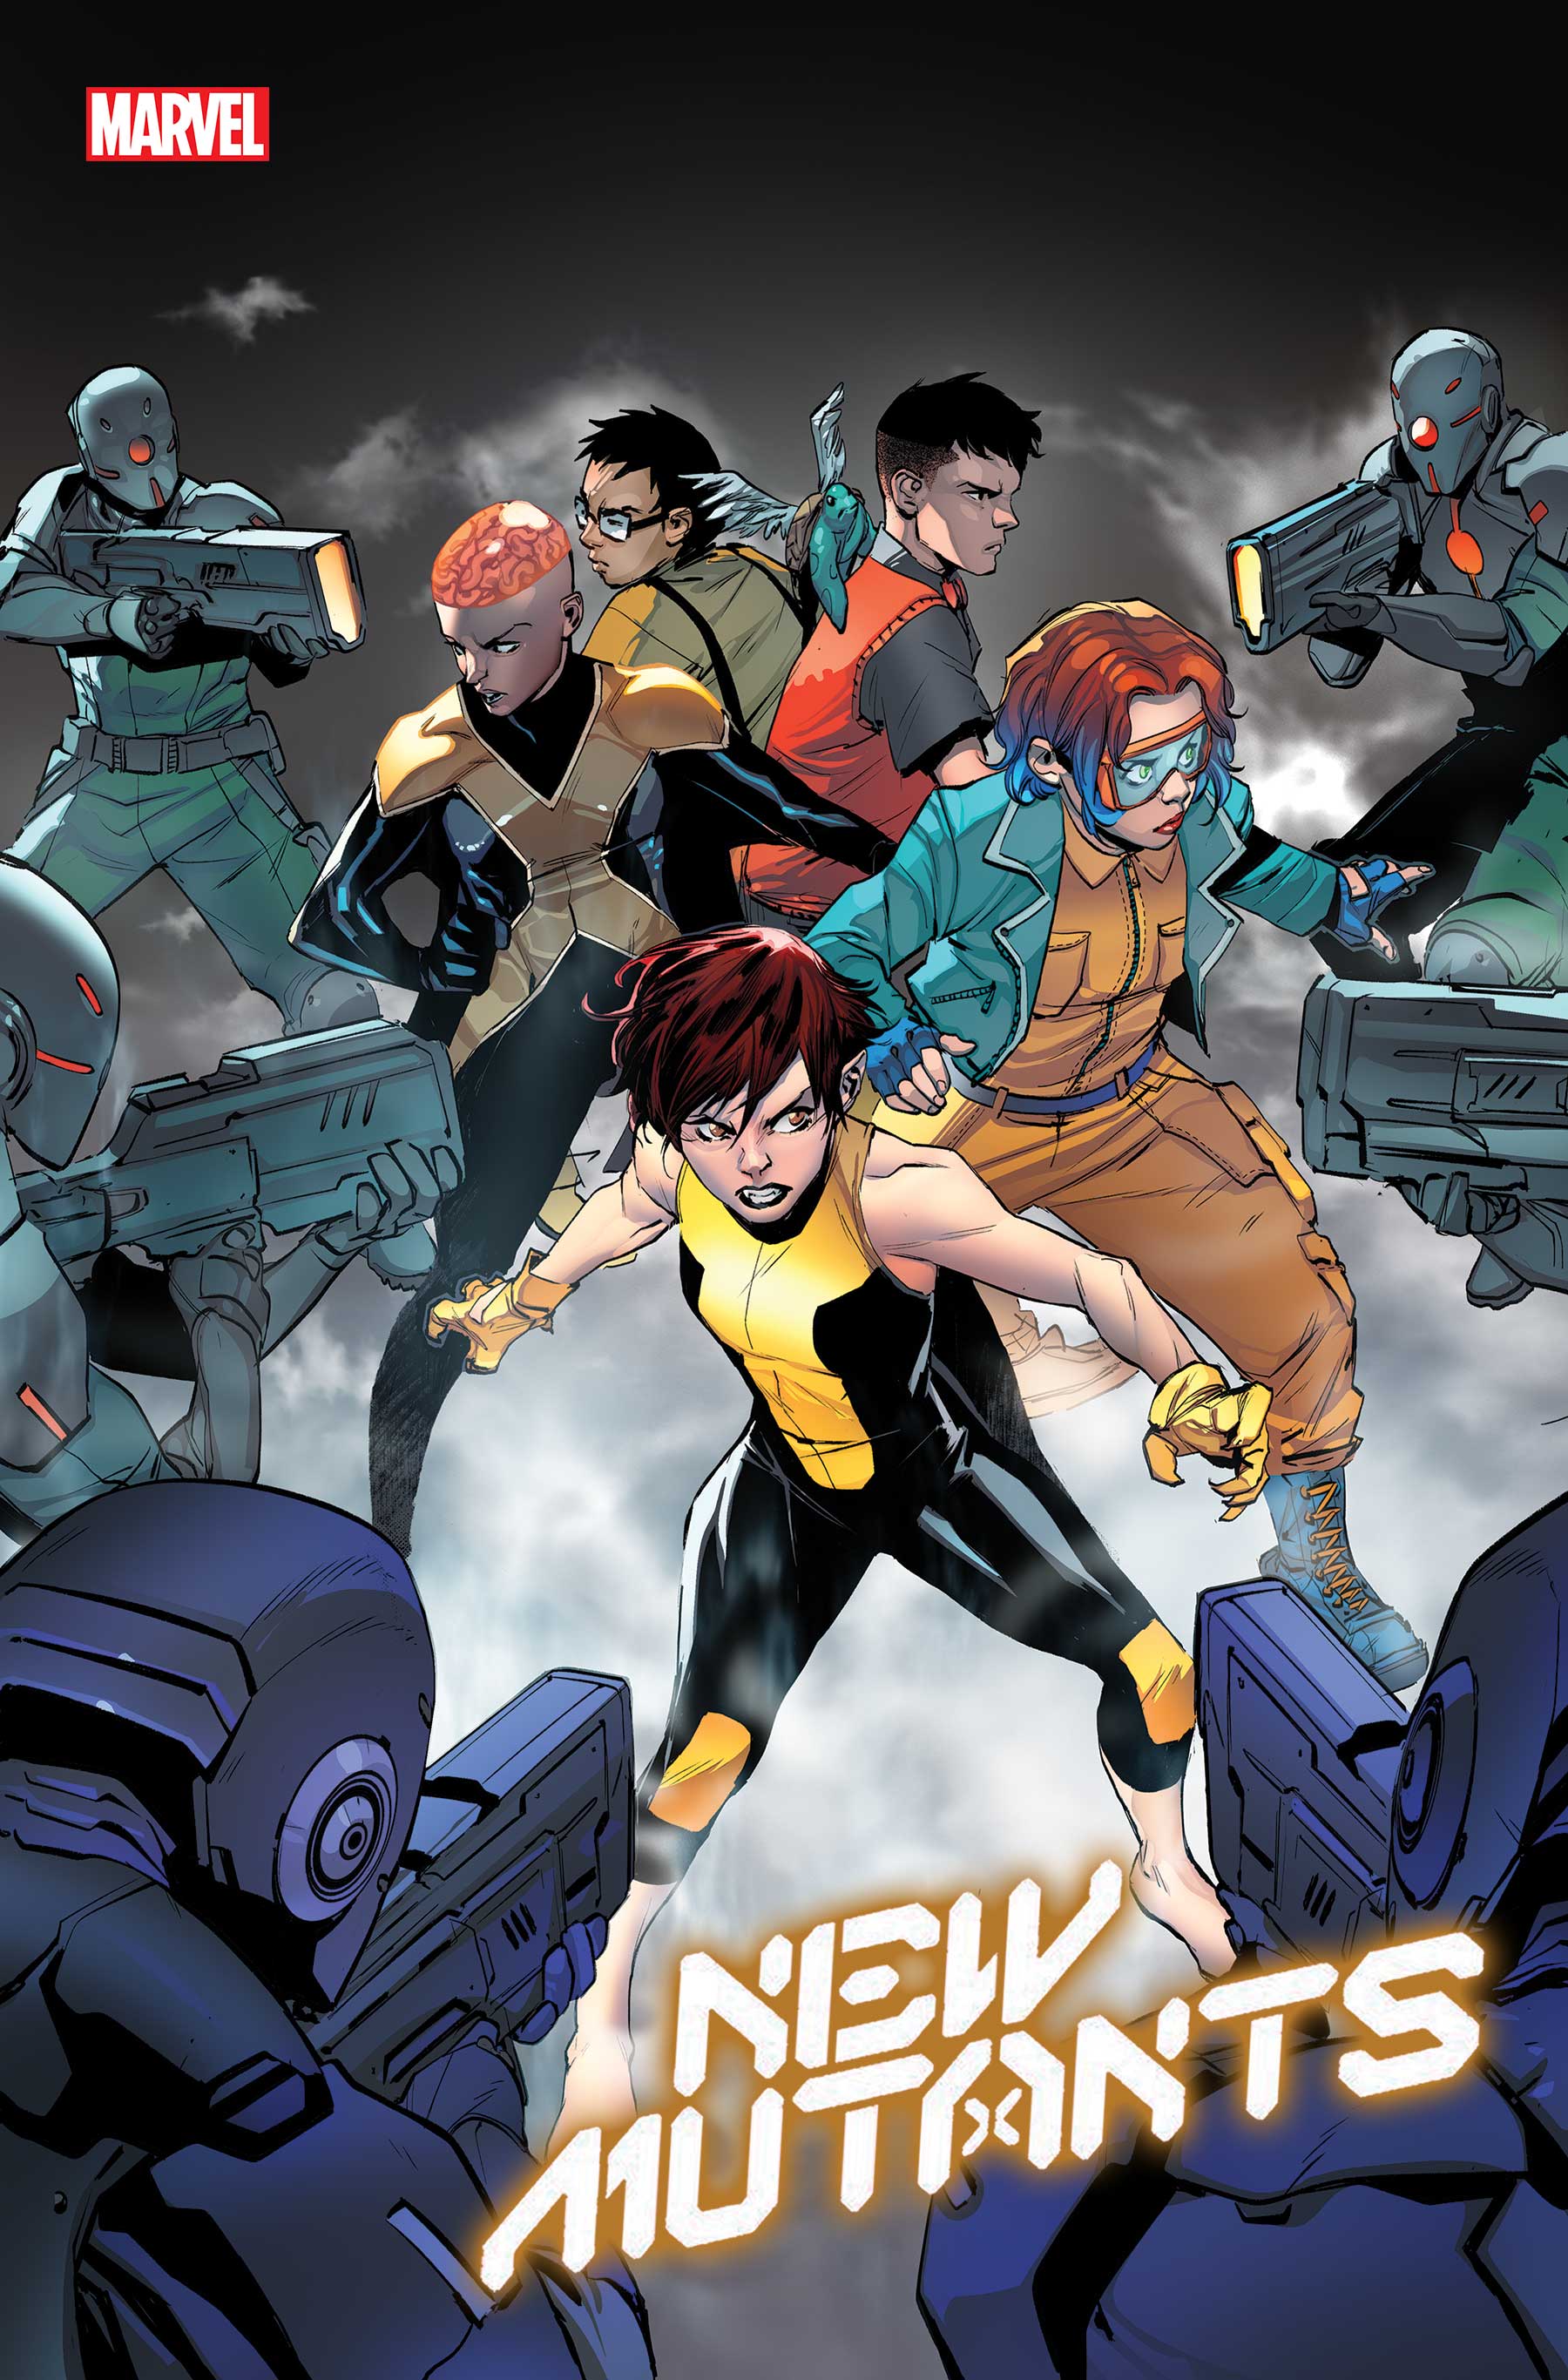 New Mutants (2019) #32